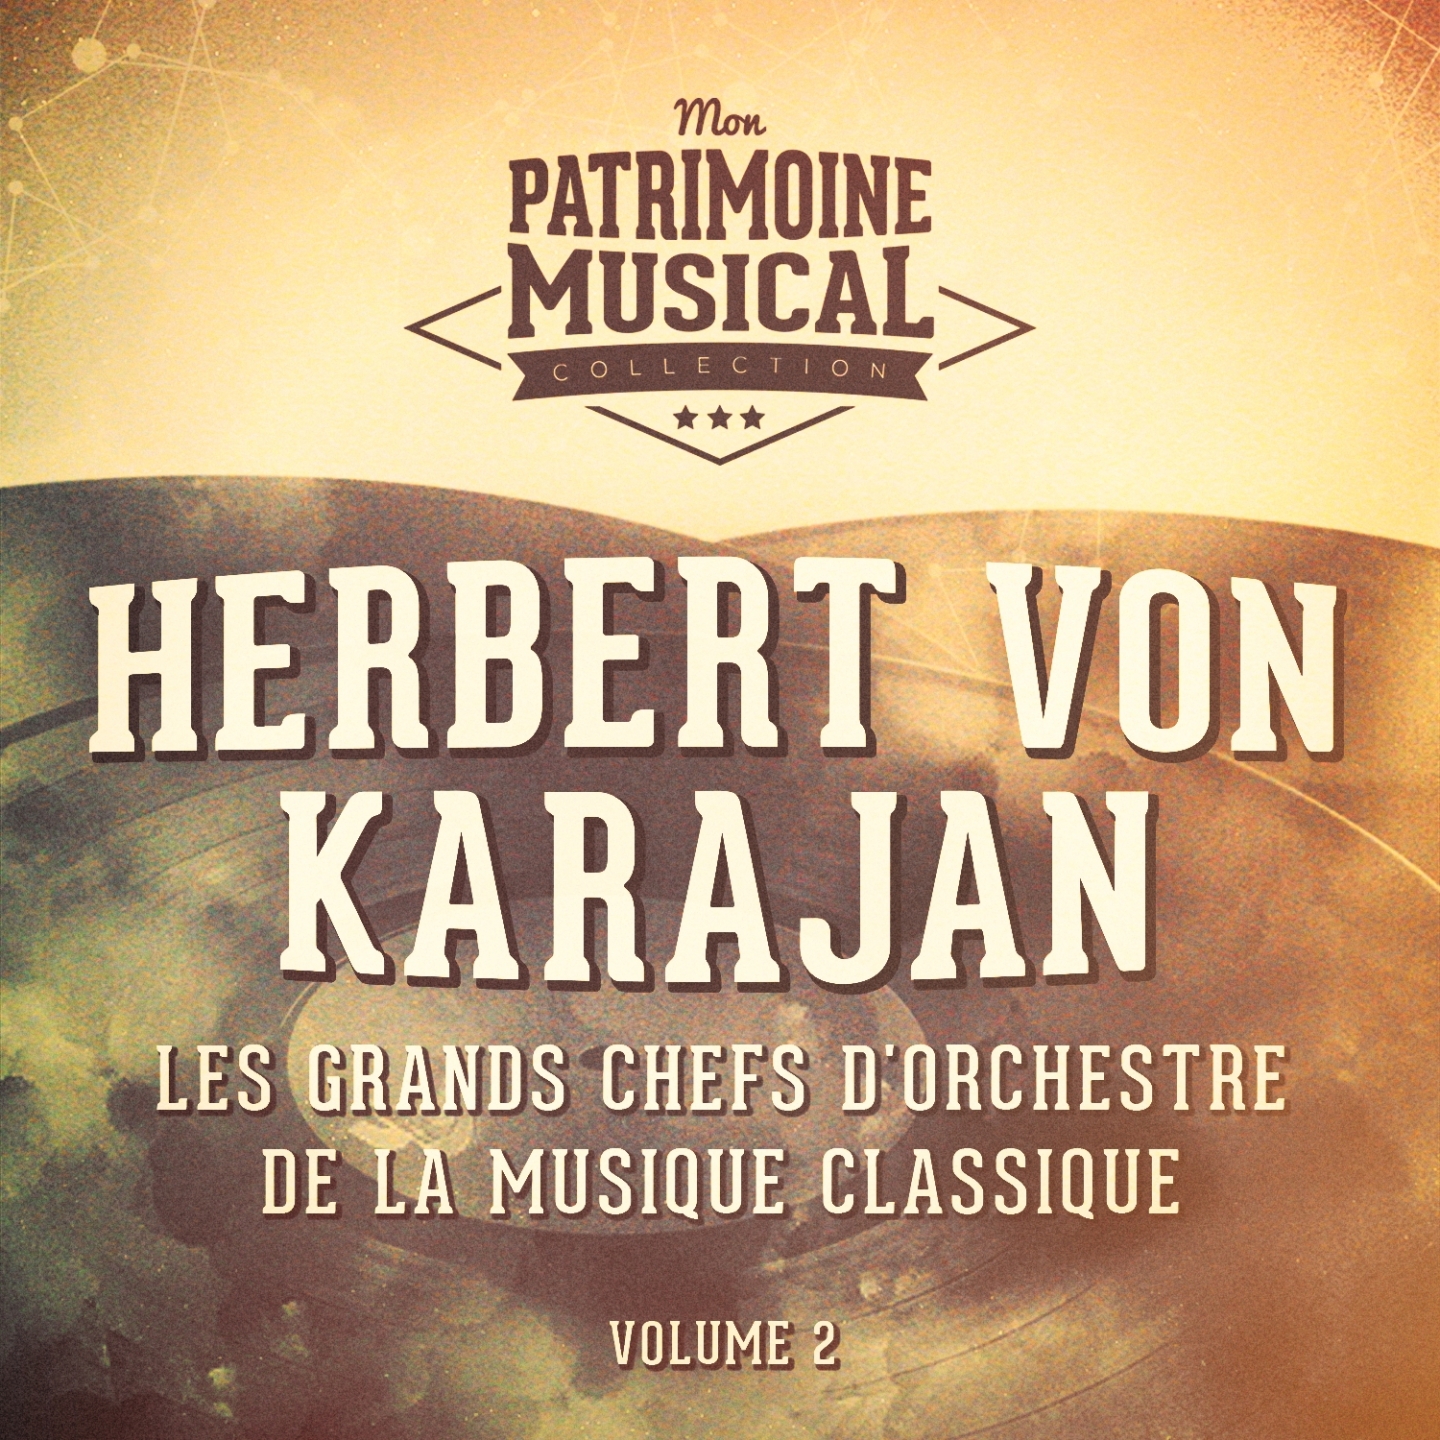 Les grands chefs d' orchestre de la musique classique : Herbert von Karajan, Vol. 2  Carmen